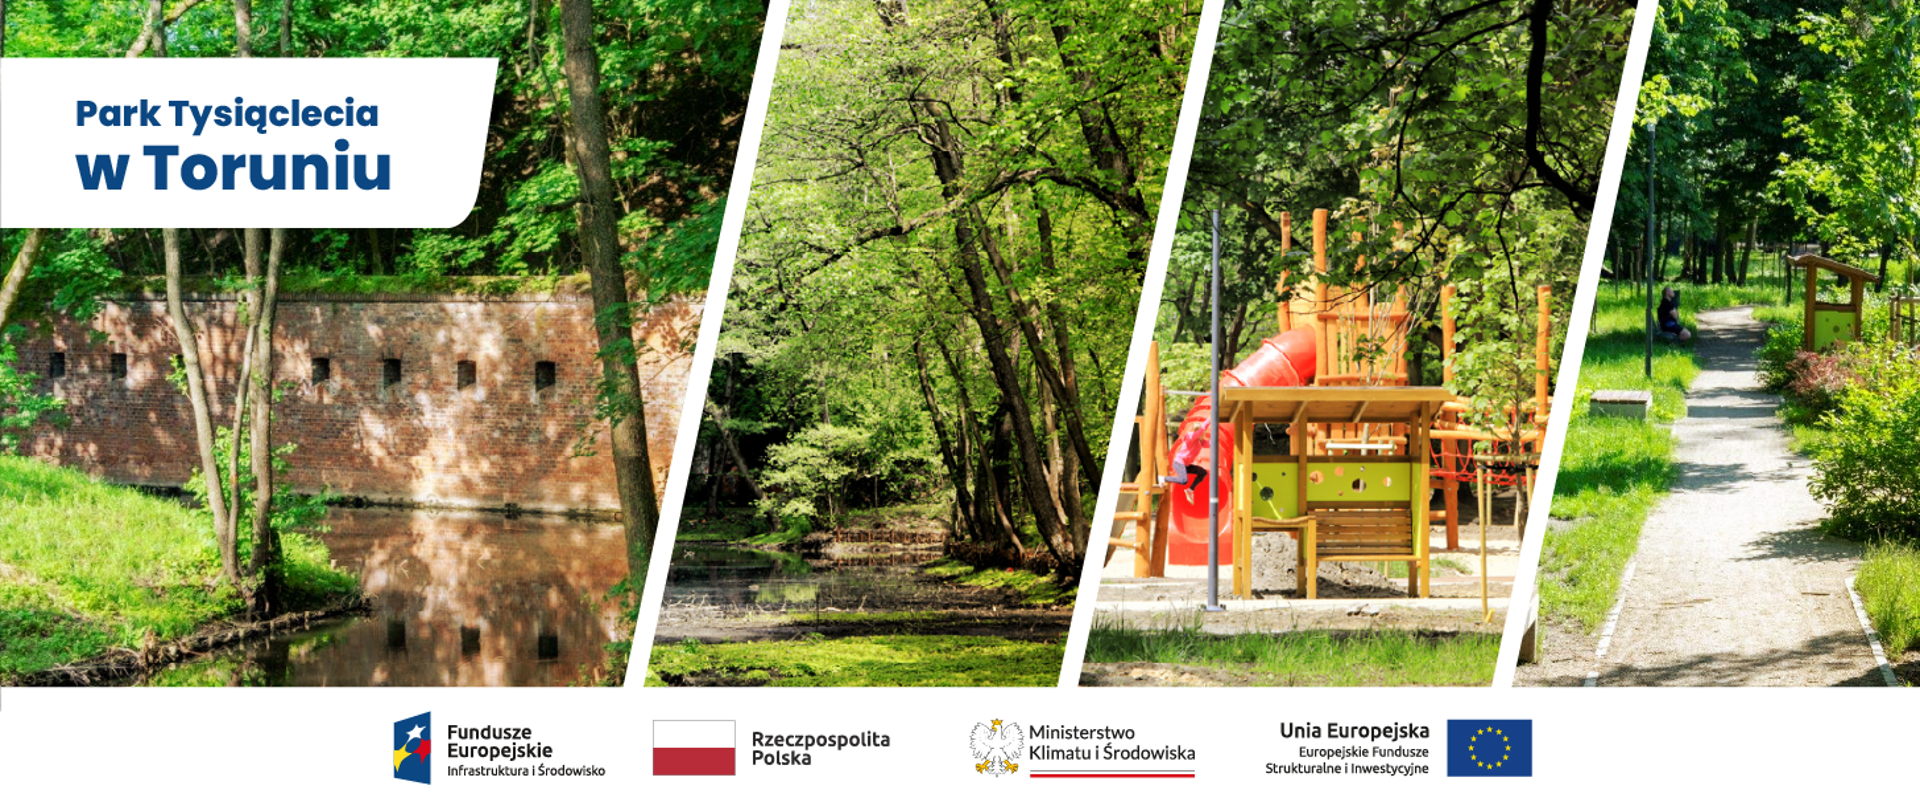 kolarz 4 zdjęć: na pierwszym drzewa, trawa, kanał z wodą i historyczne mury, na drugim kanał i drzewa na brzegu, na trzecim plac zabaw, na czwartym ścieżka parkowa oraz zieleń parkowa. Na samym dole logotypy POIS 2014-2020